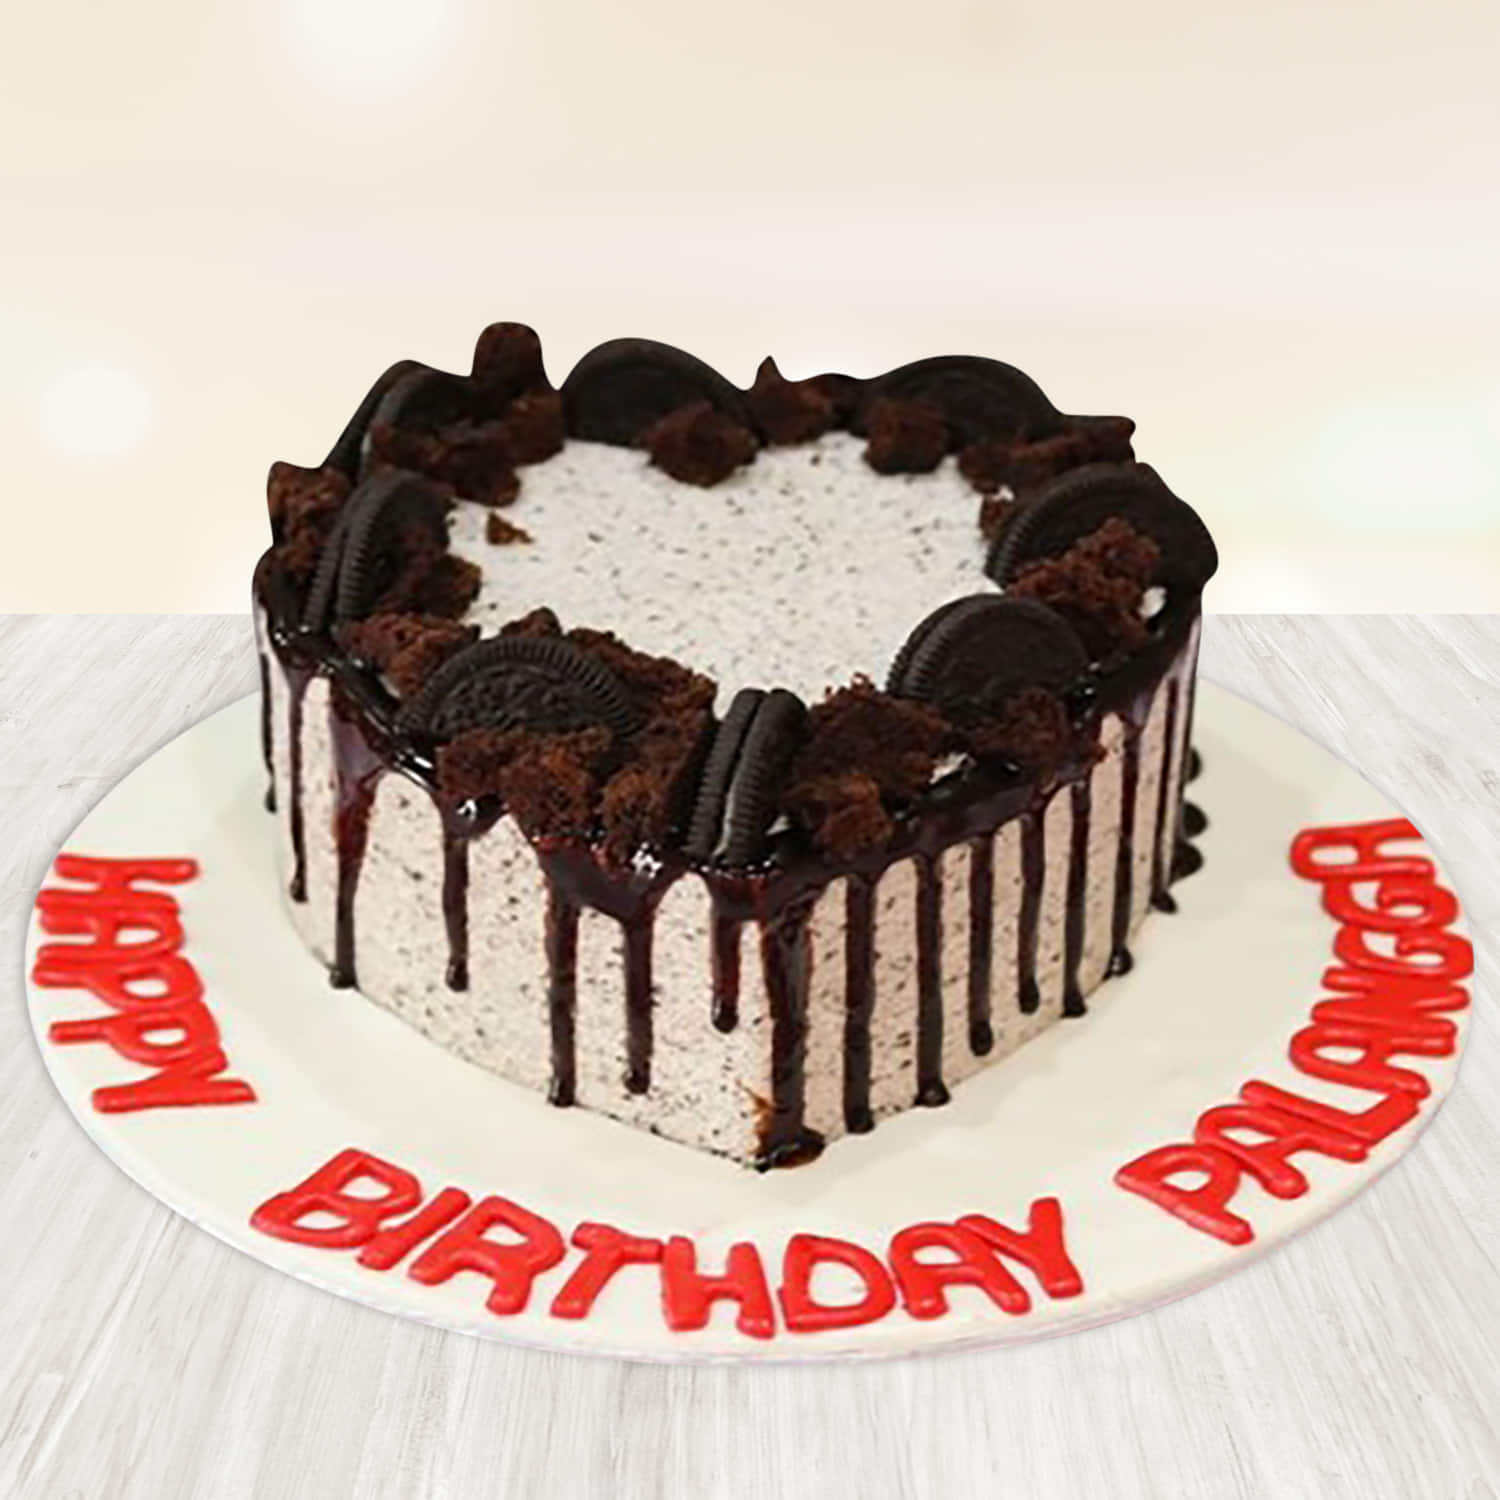 Awesome Miniature OREO Chocolate Cake Decorating | Yummy Tiny Cake Design  For You - YouTube